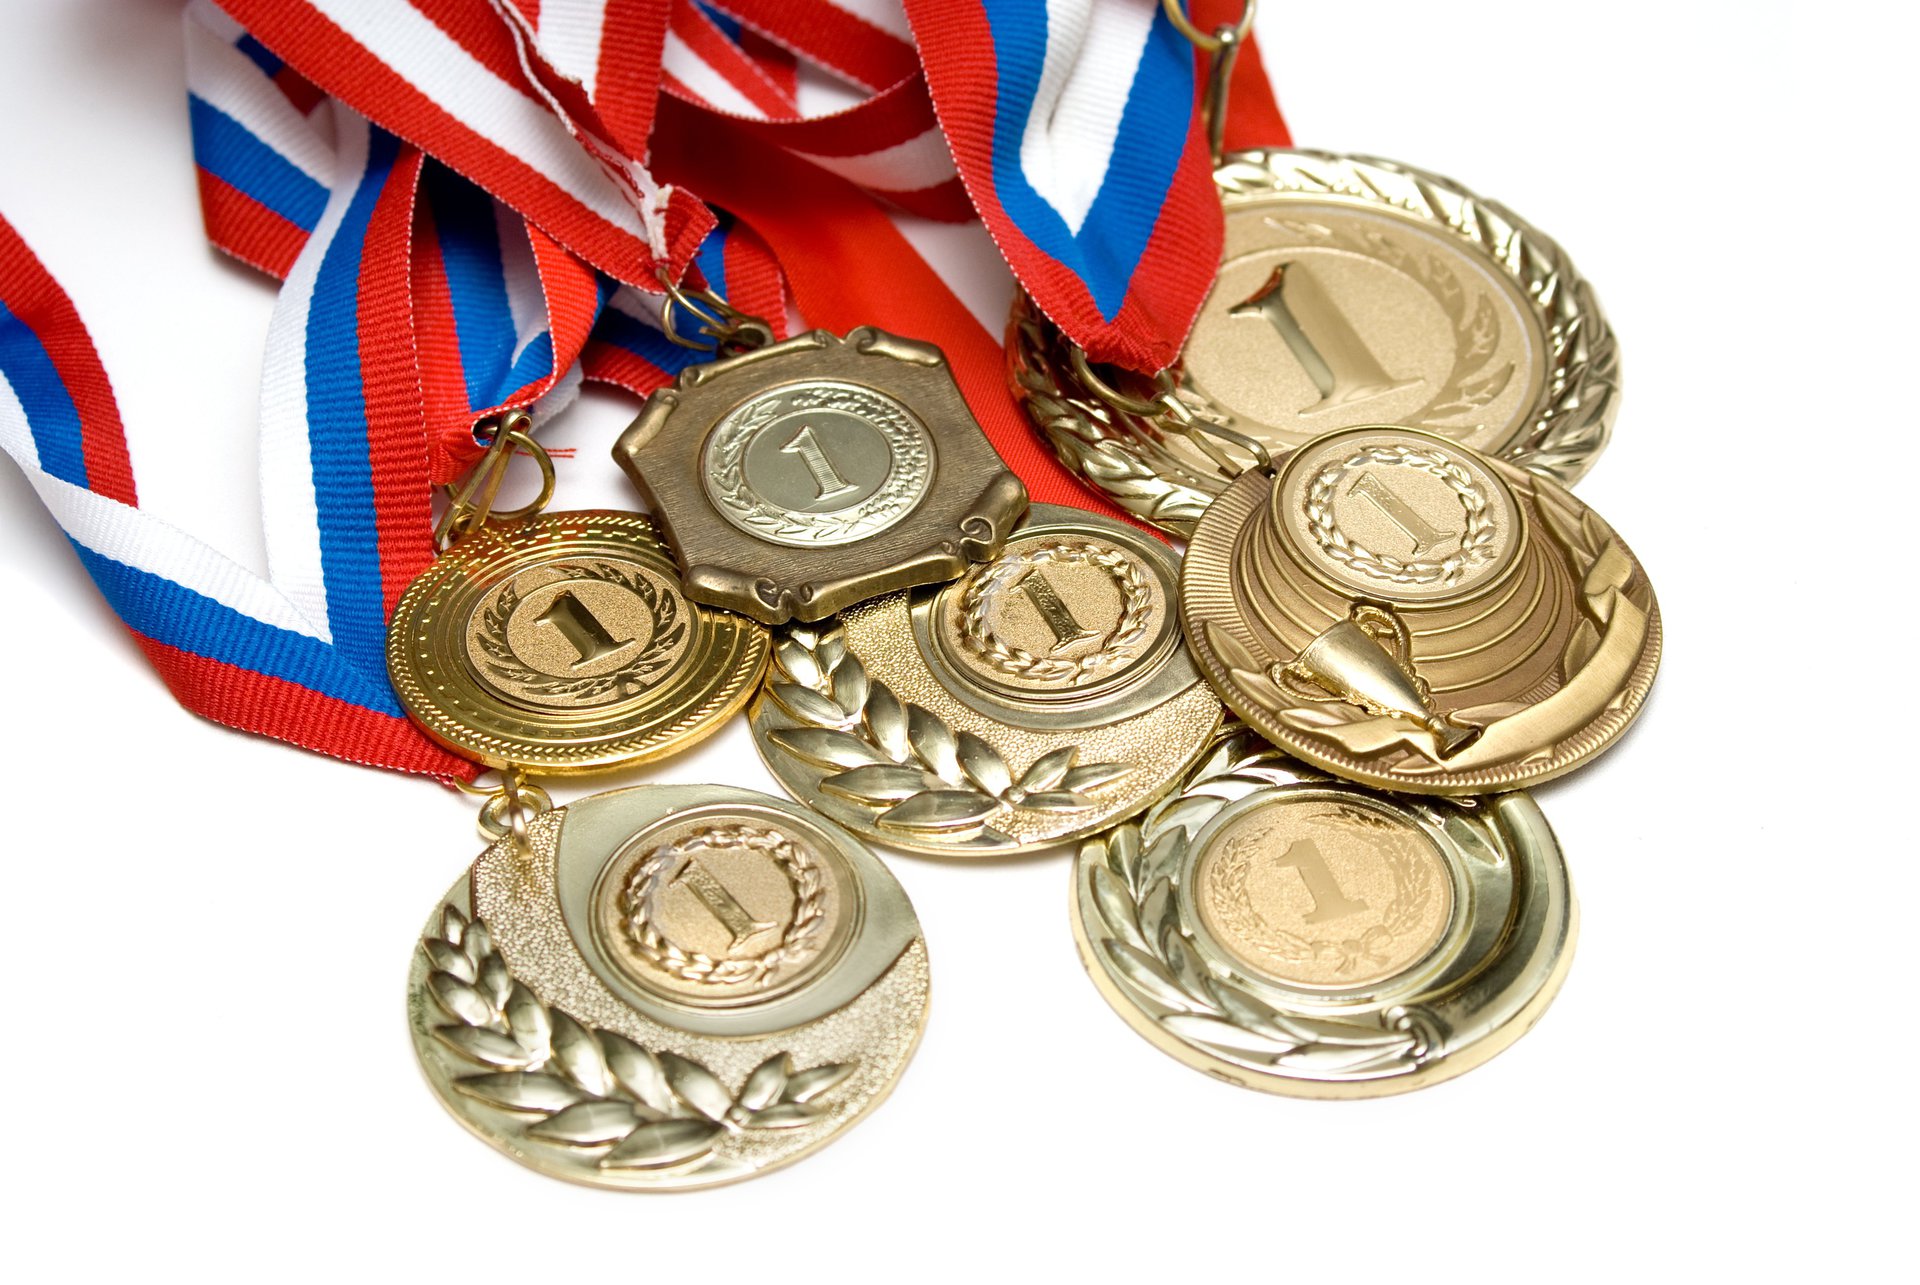 Sports medals. Медали спортивные. Спортивные награды. Золотая медаль. Спортивные кубки и медали.